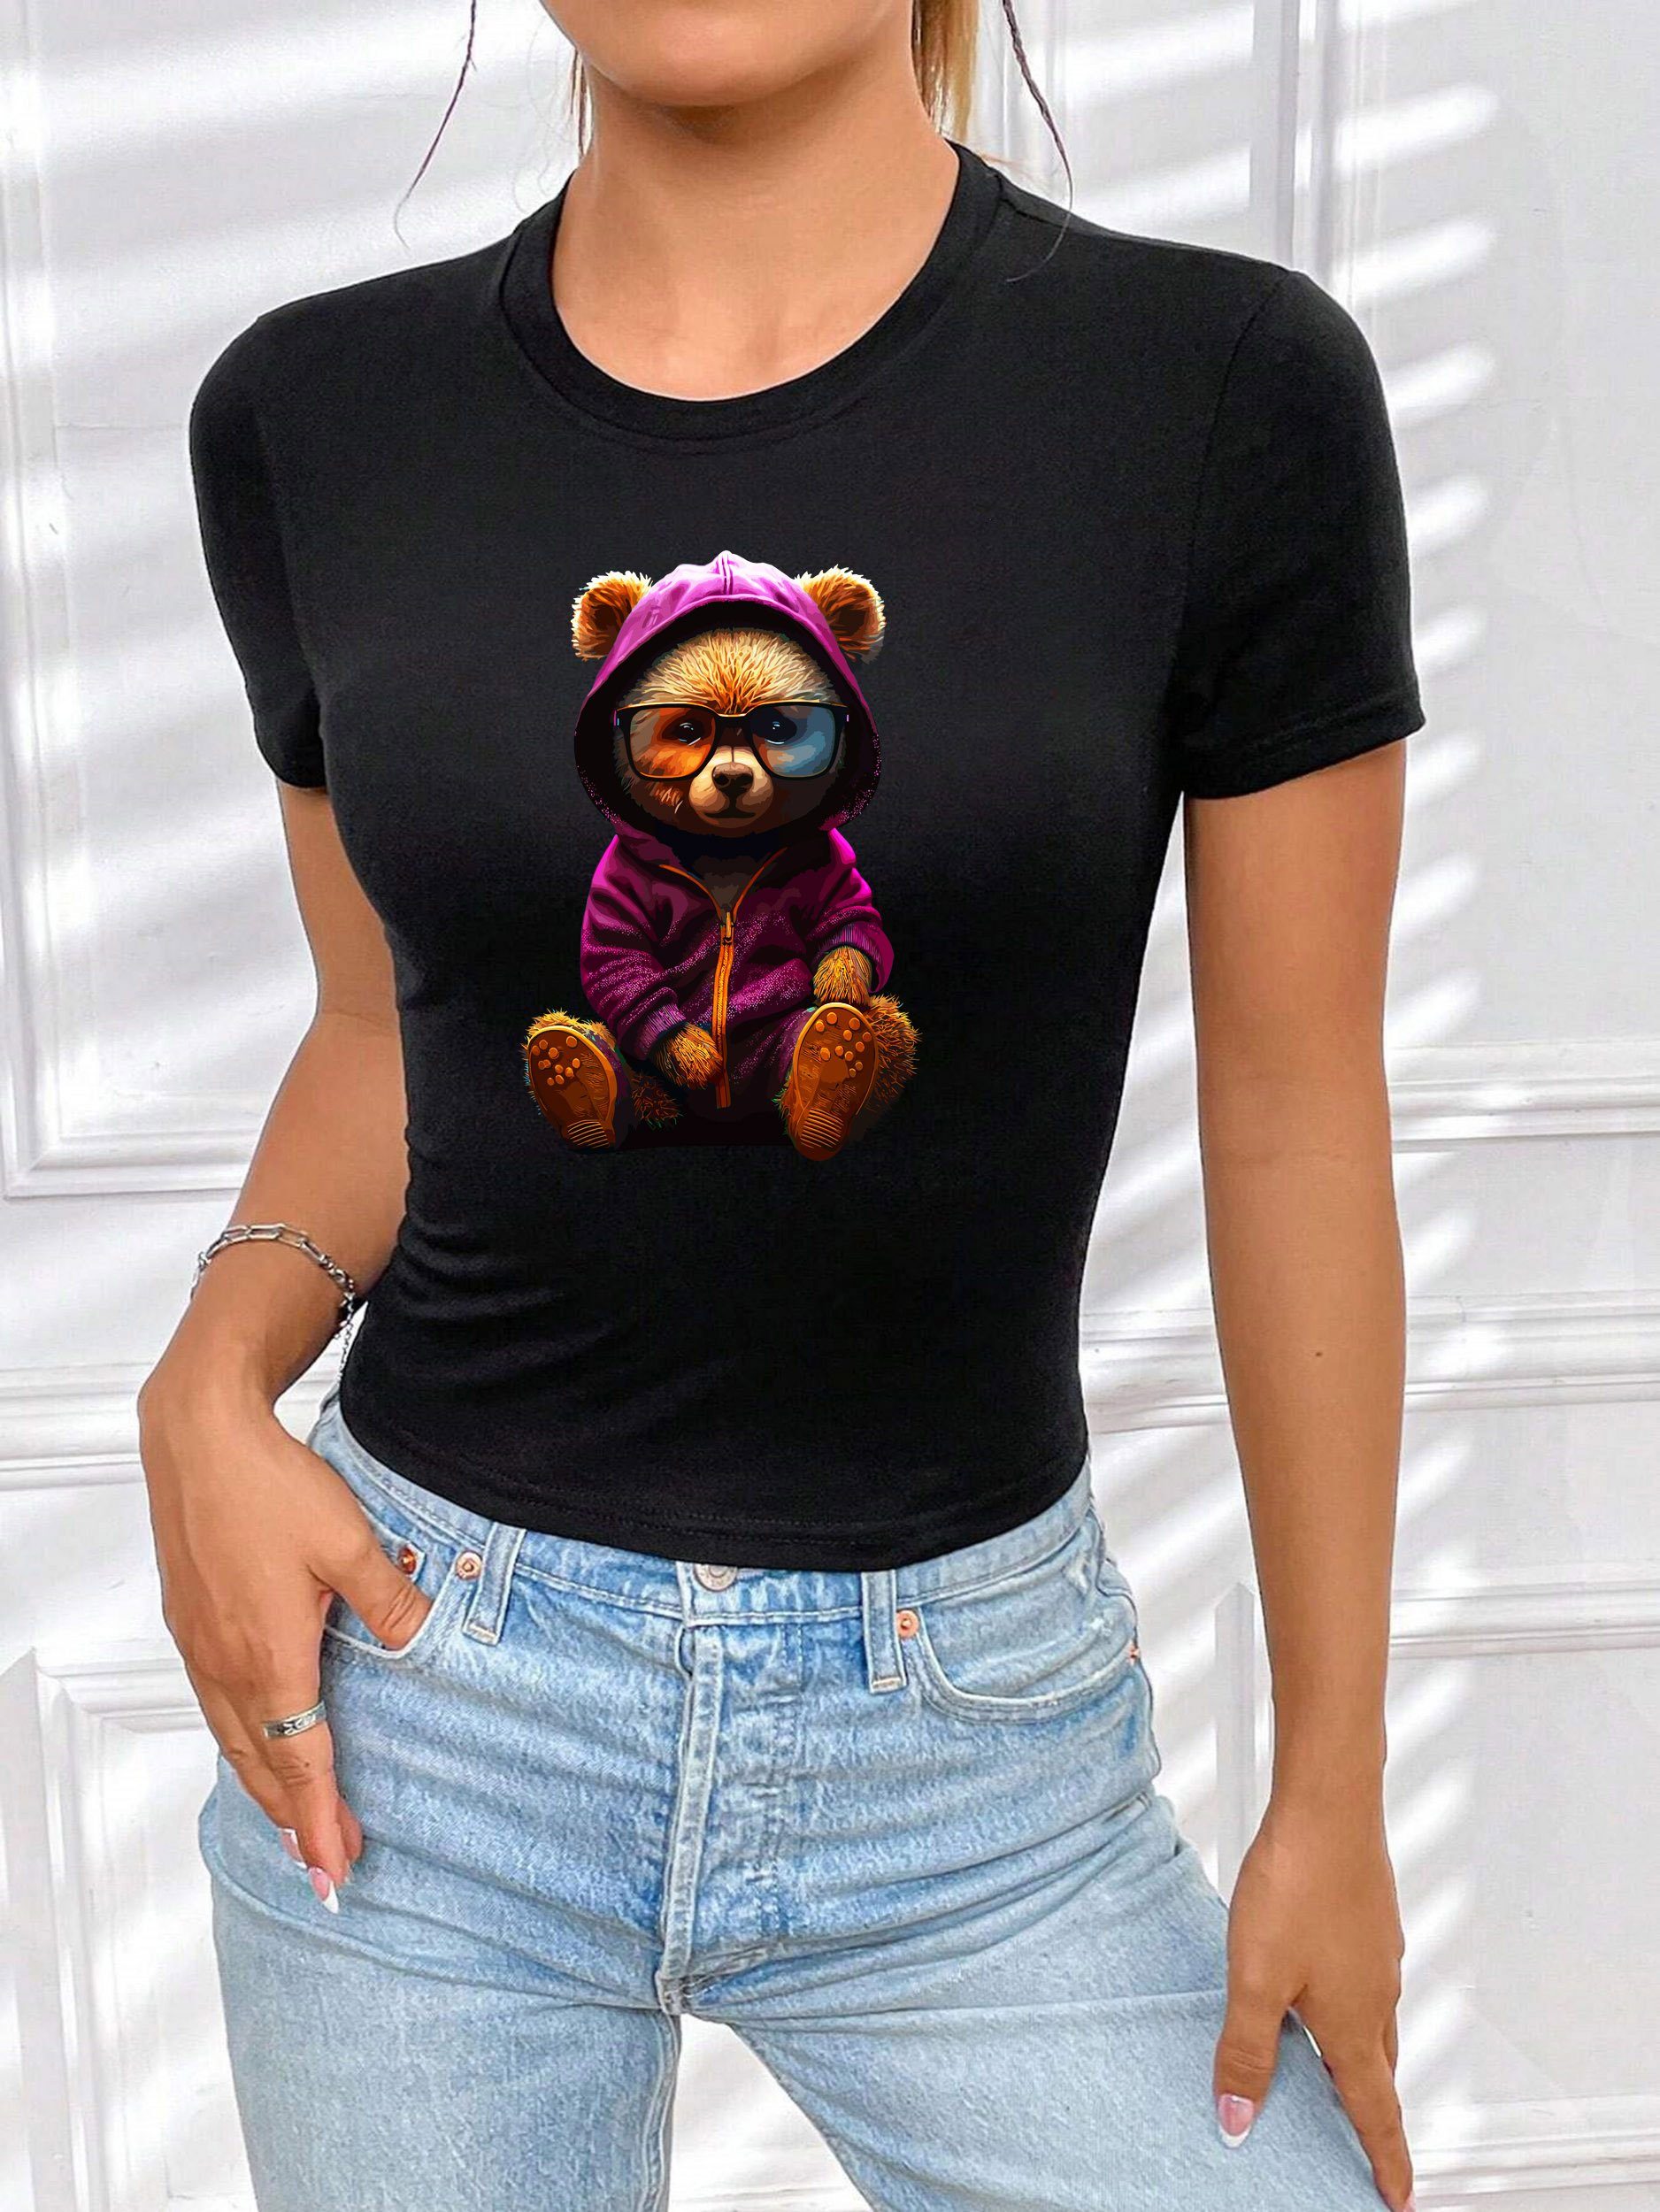 RMK Print-Shirt Damen T-Shirt Top Sommer Rundhals süßer Teddybär Bär Brille mit lizenziertem Originaldesign, aus Baumwolle, Unifarbe Schwarz-Lila